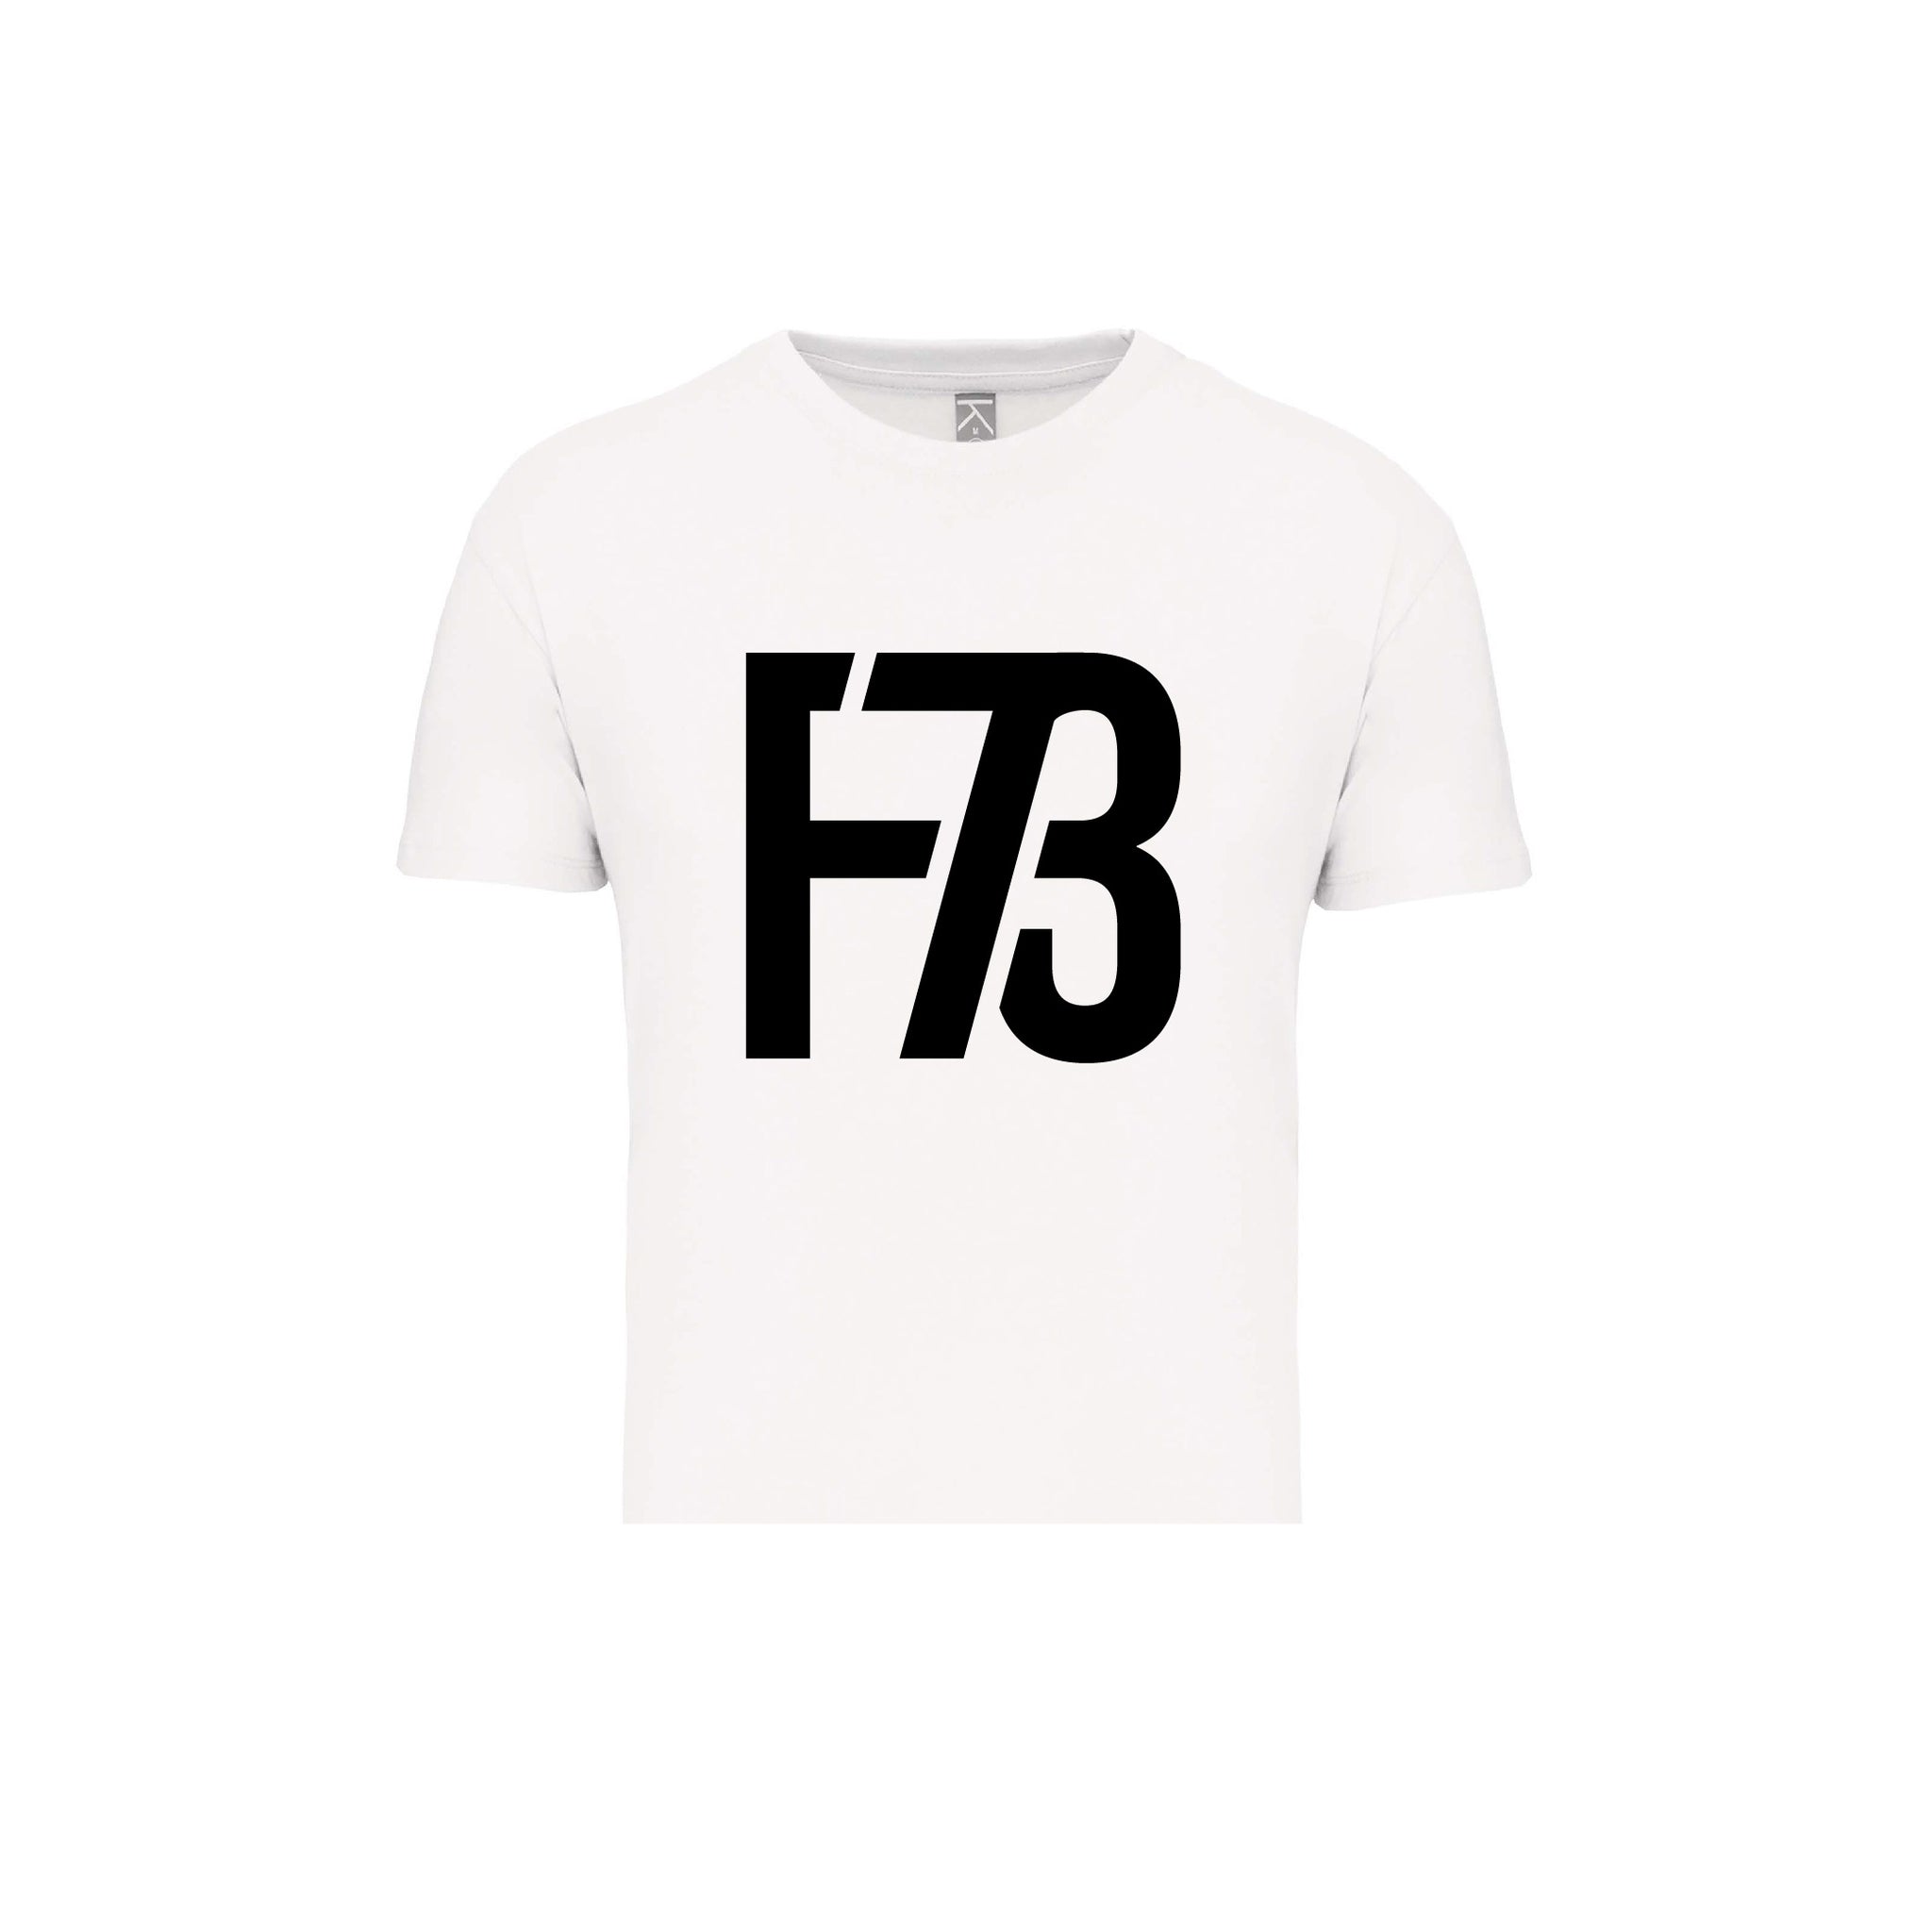 F73 Kinder T-Shirt - weiß